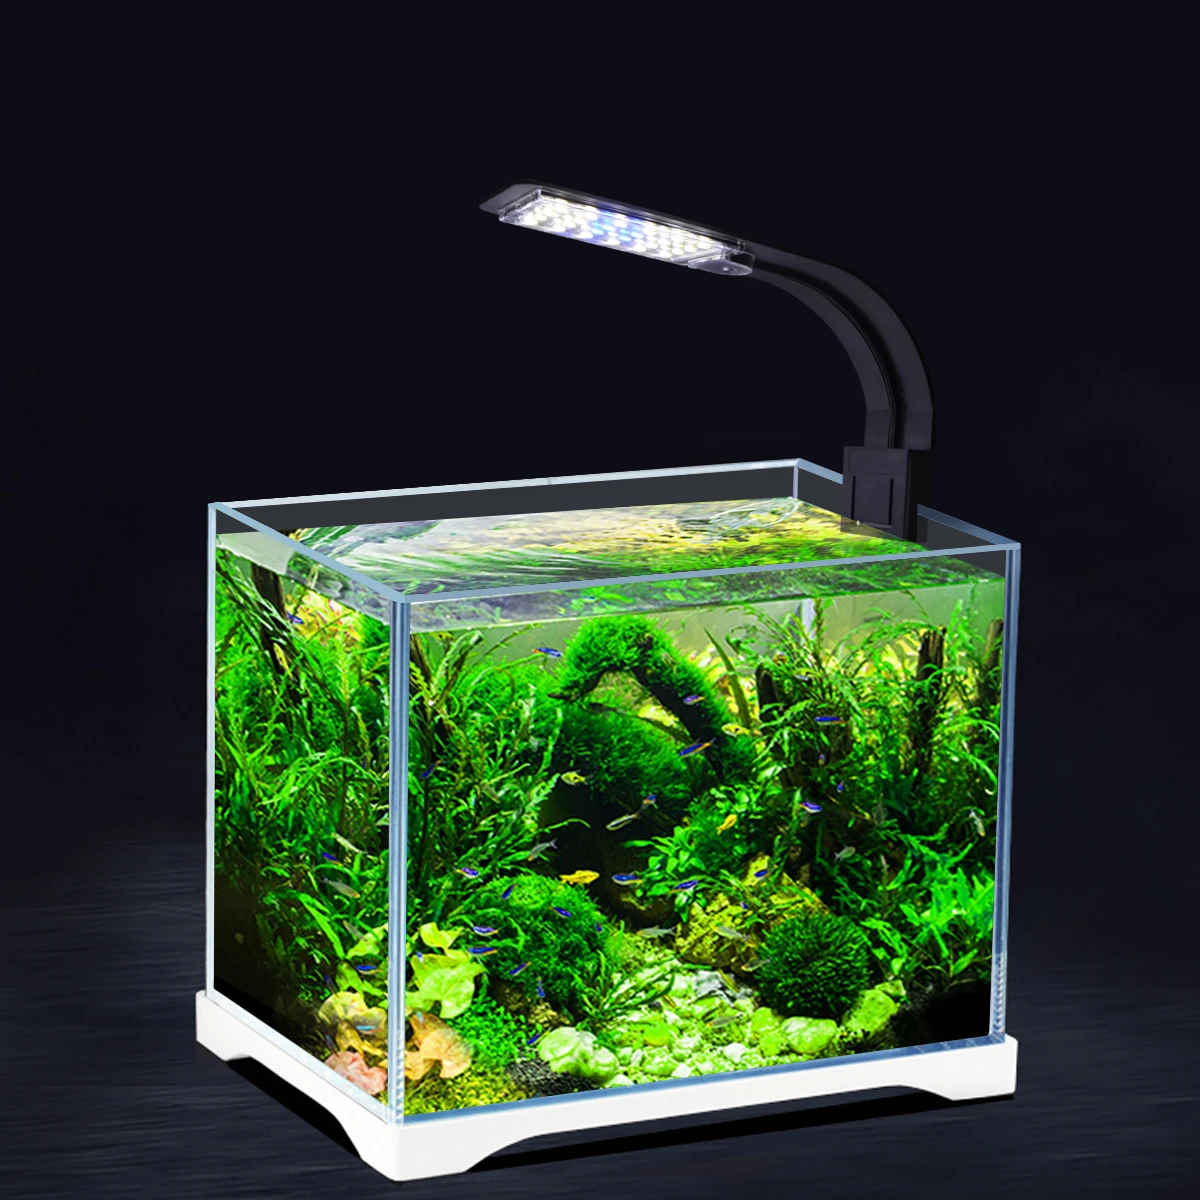 5 Вт/10 Вт/15 Вт супер тонкие светодиодные аквариумные лампочки клип-на светодиодный освещение для выращивания растений водные лампы для пресной воды Водонепроницаемая лампа для аквариумов